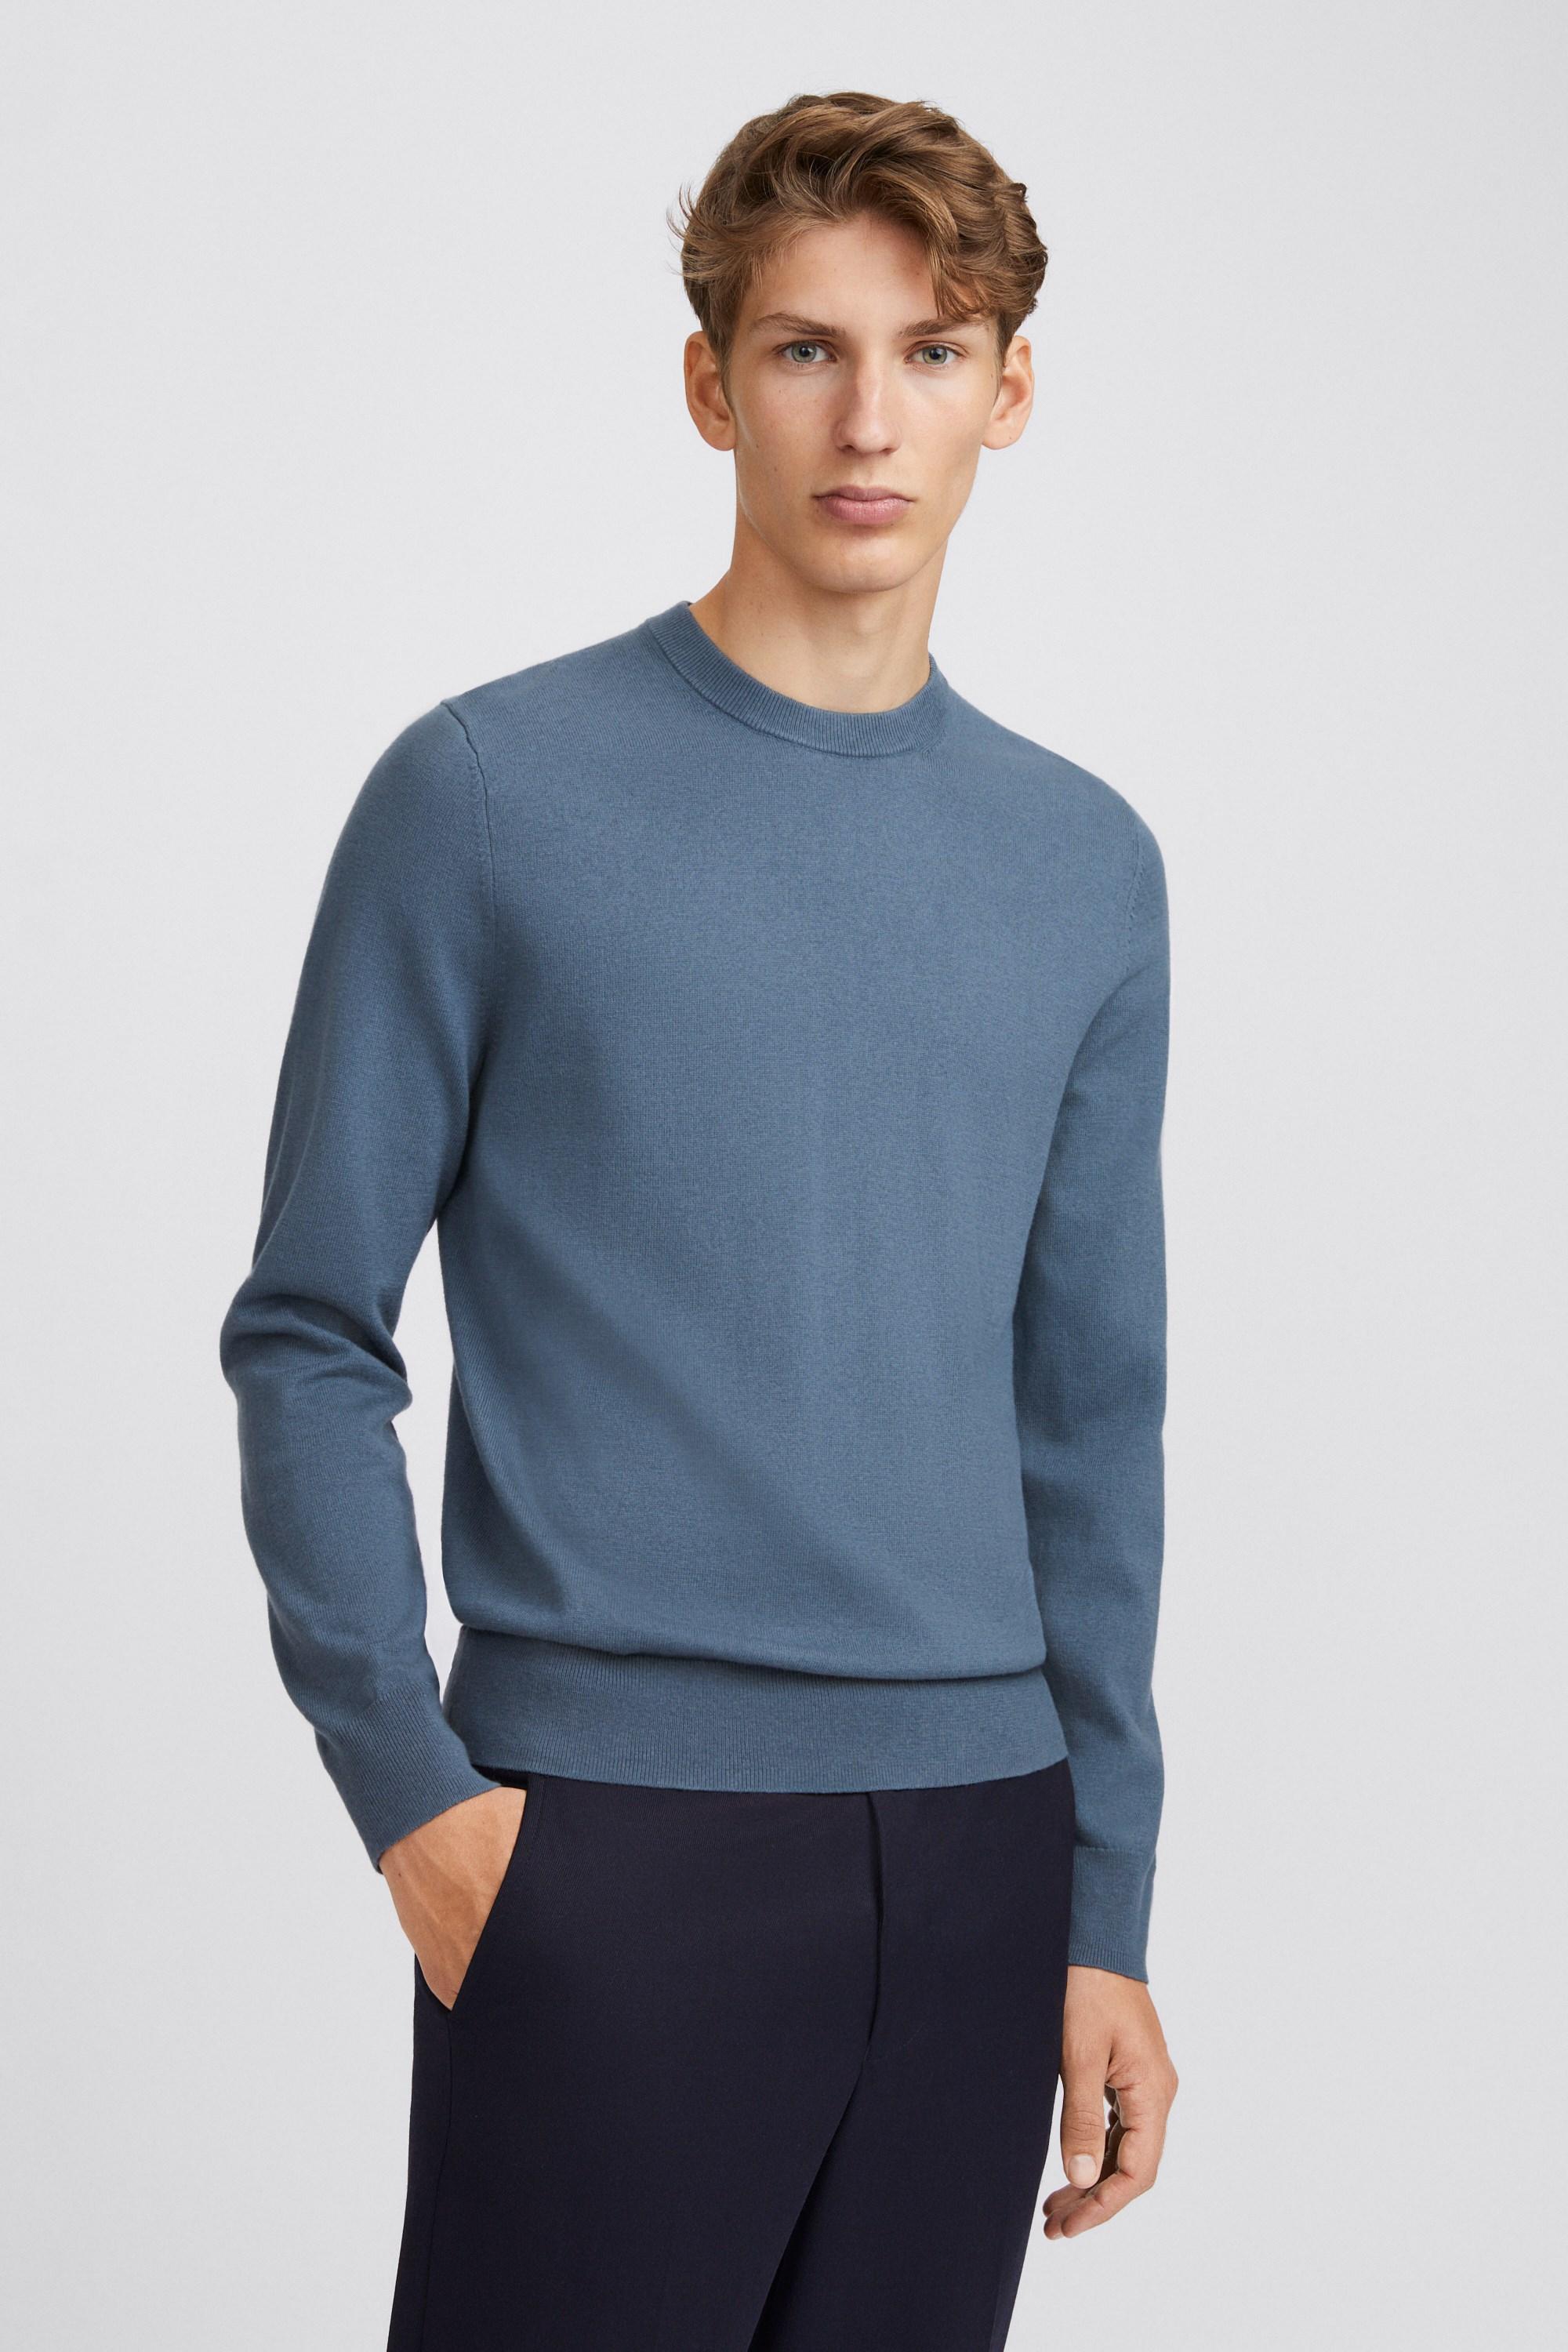 Filippa K Cotton Merino Sweater in Blue Grey (Blue) for Men - Lyst